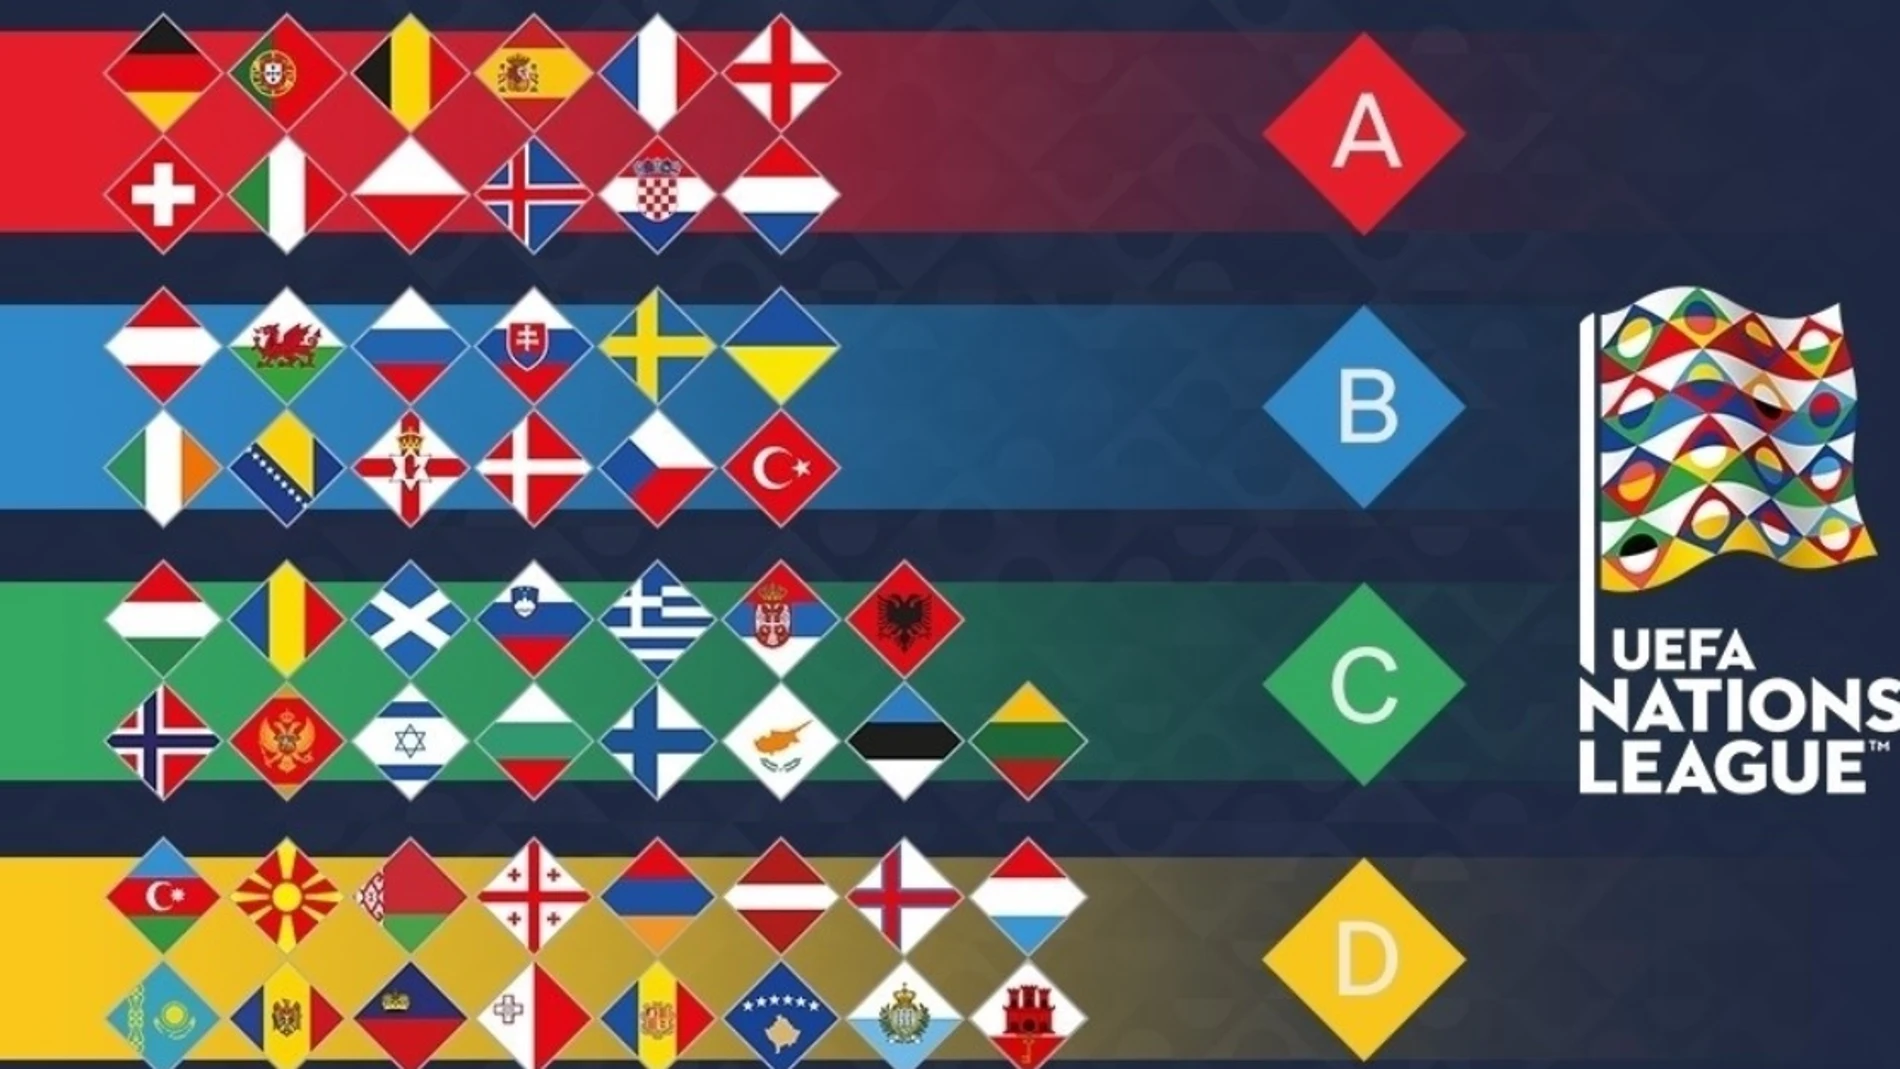 Composición de las cuatro ligas de la Nations League